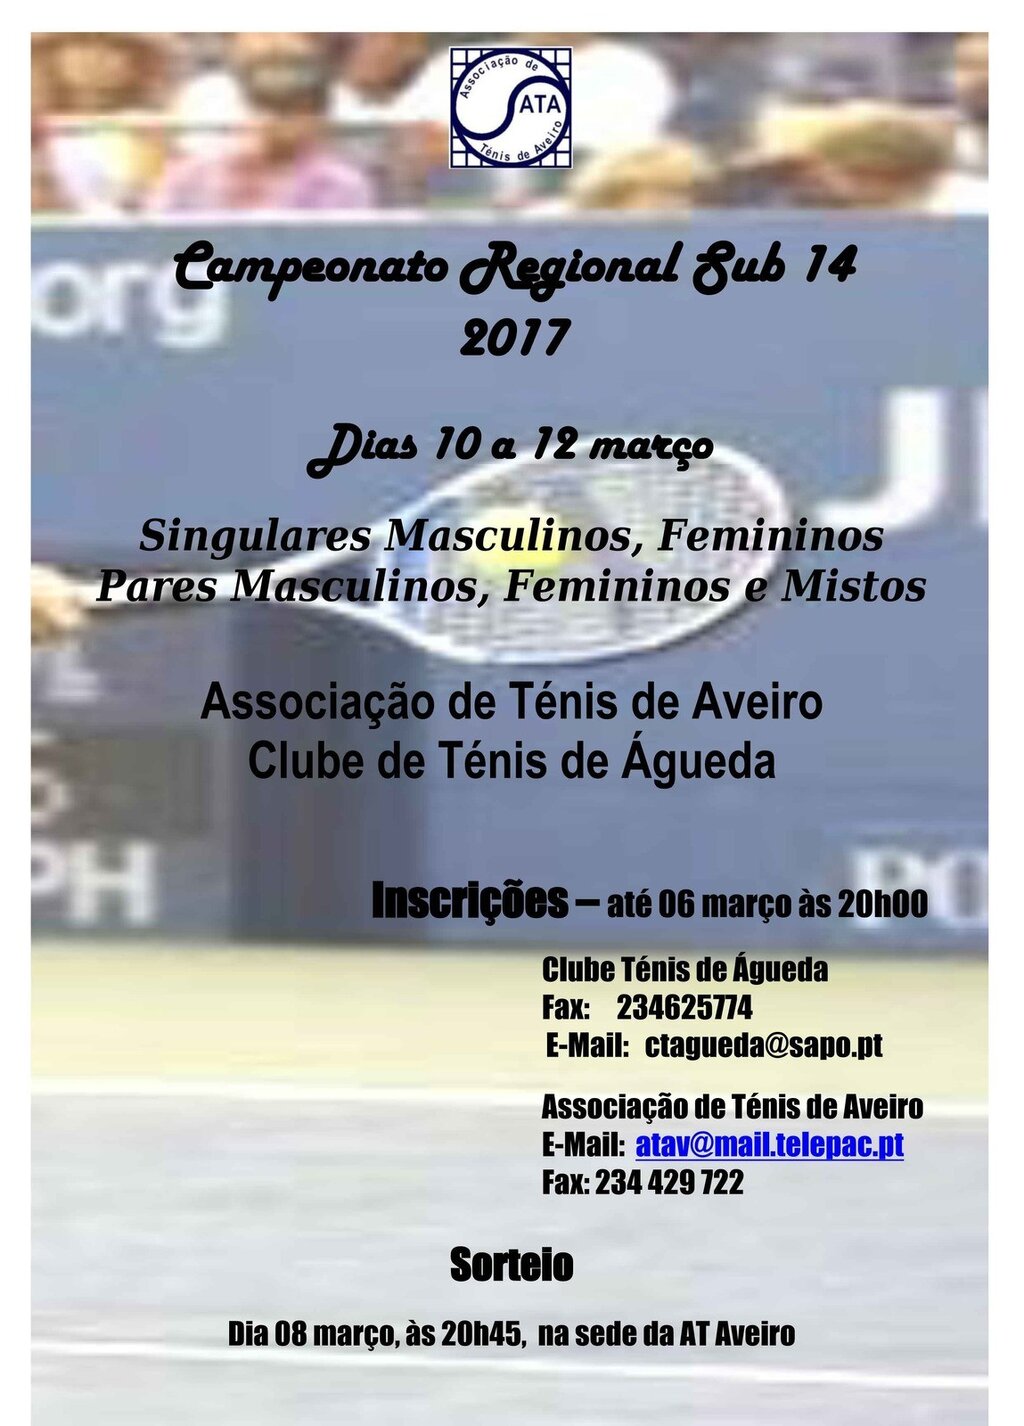 Campeonato Regional Sub 14 